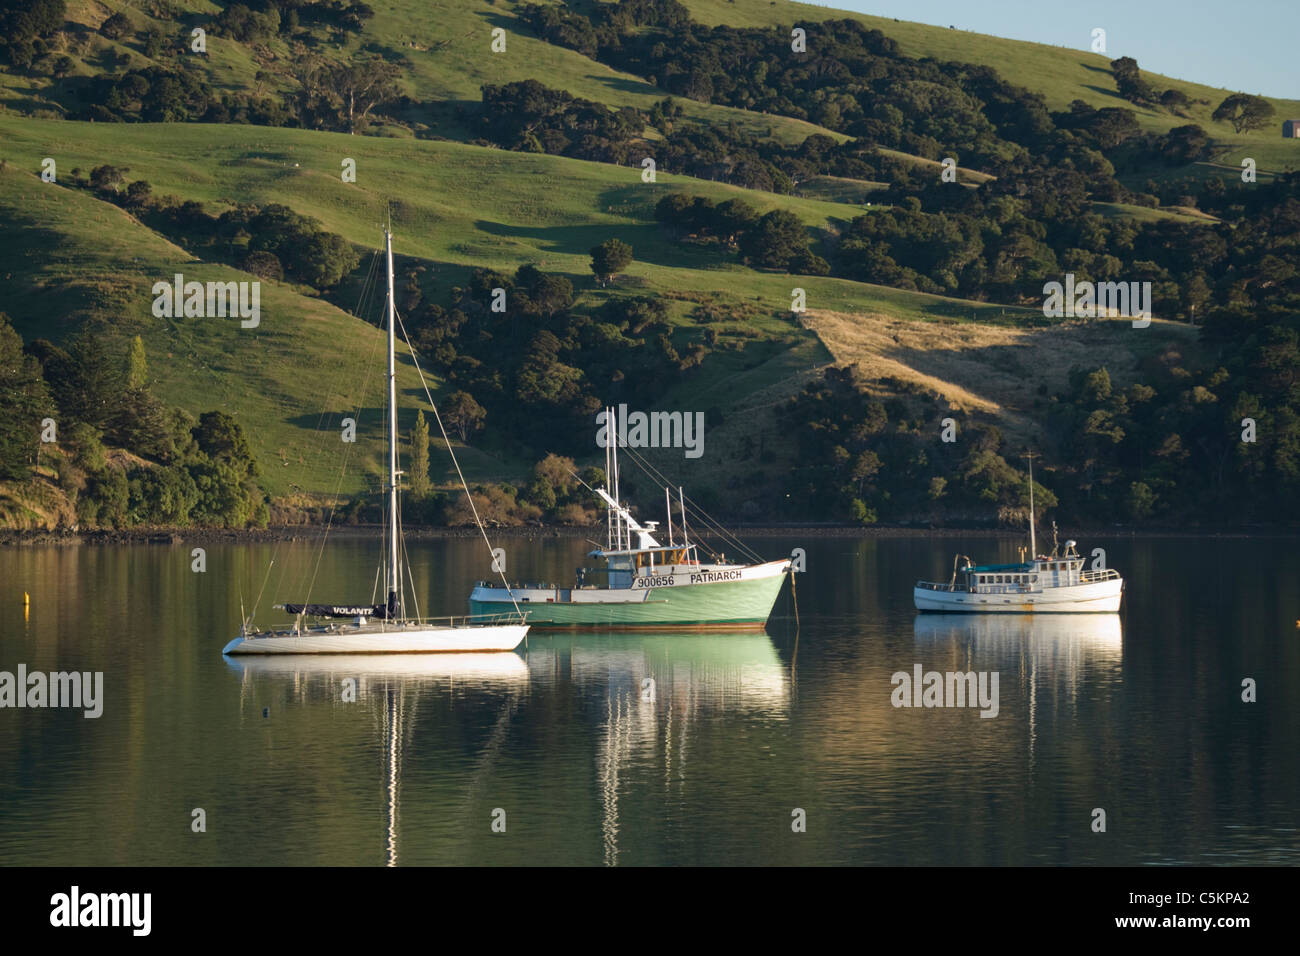 Three small boats at anchor, Lake Wanaka, New Zealand Stock Photo